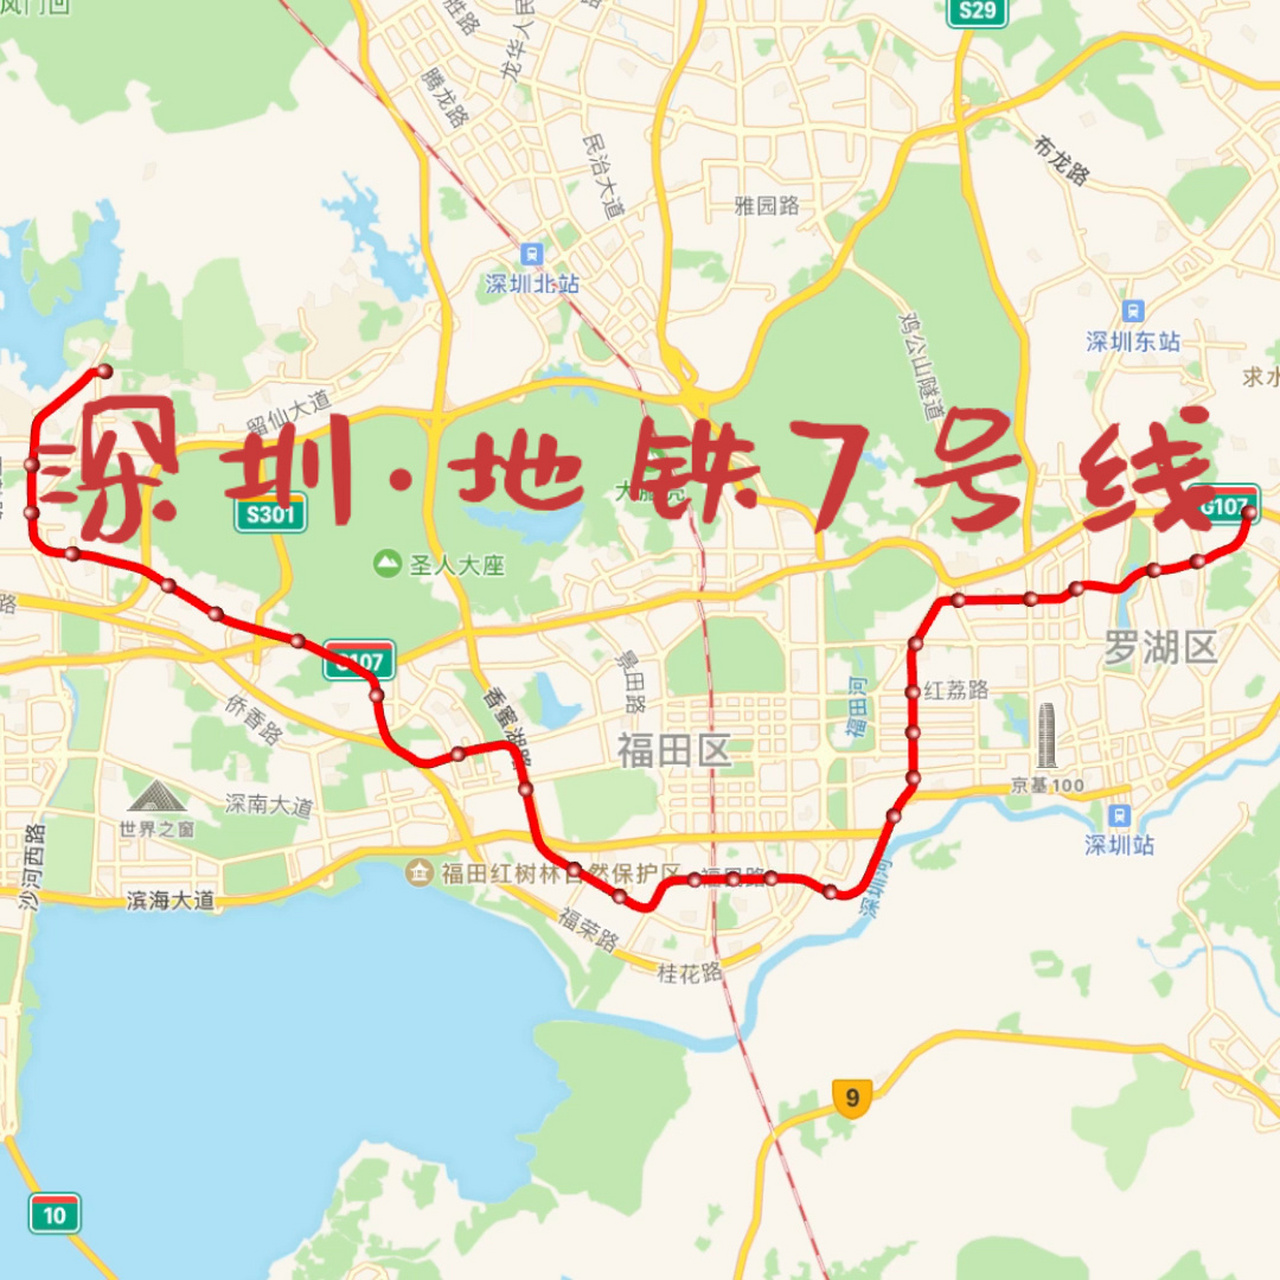 深圳地铁线路 7号图片